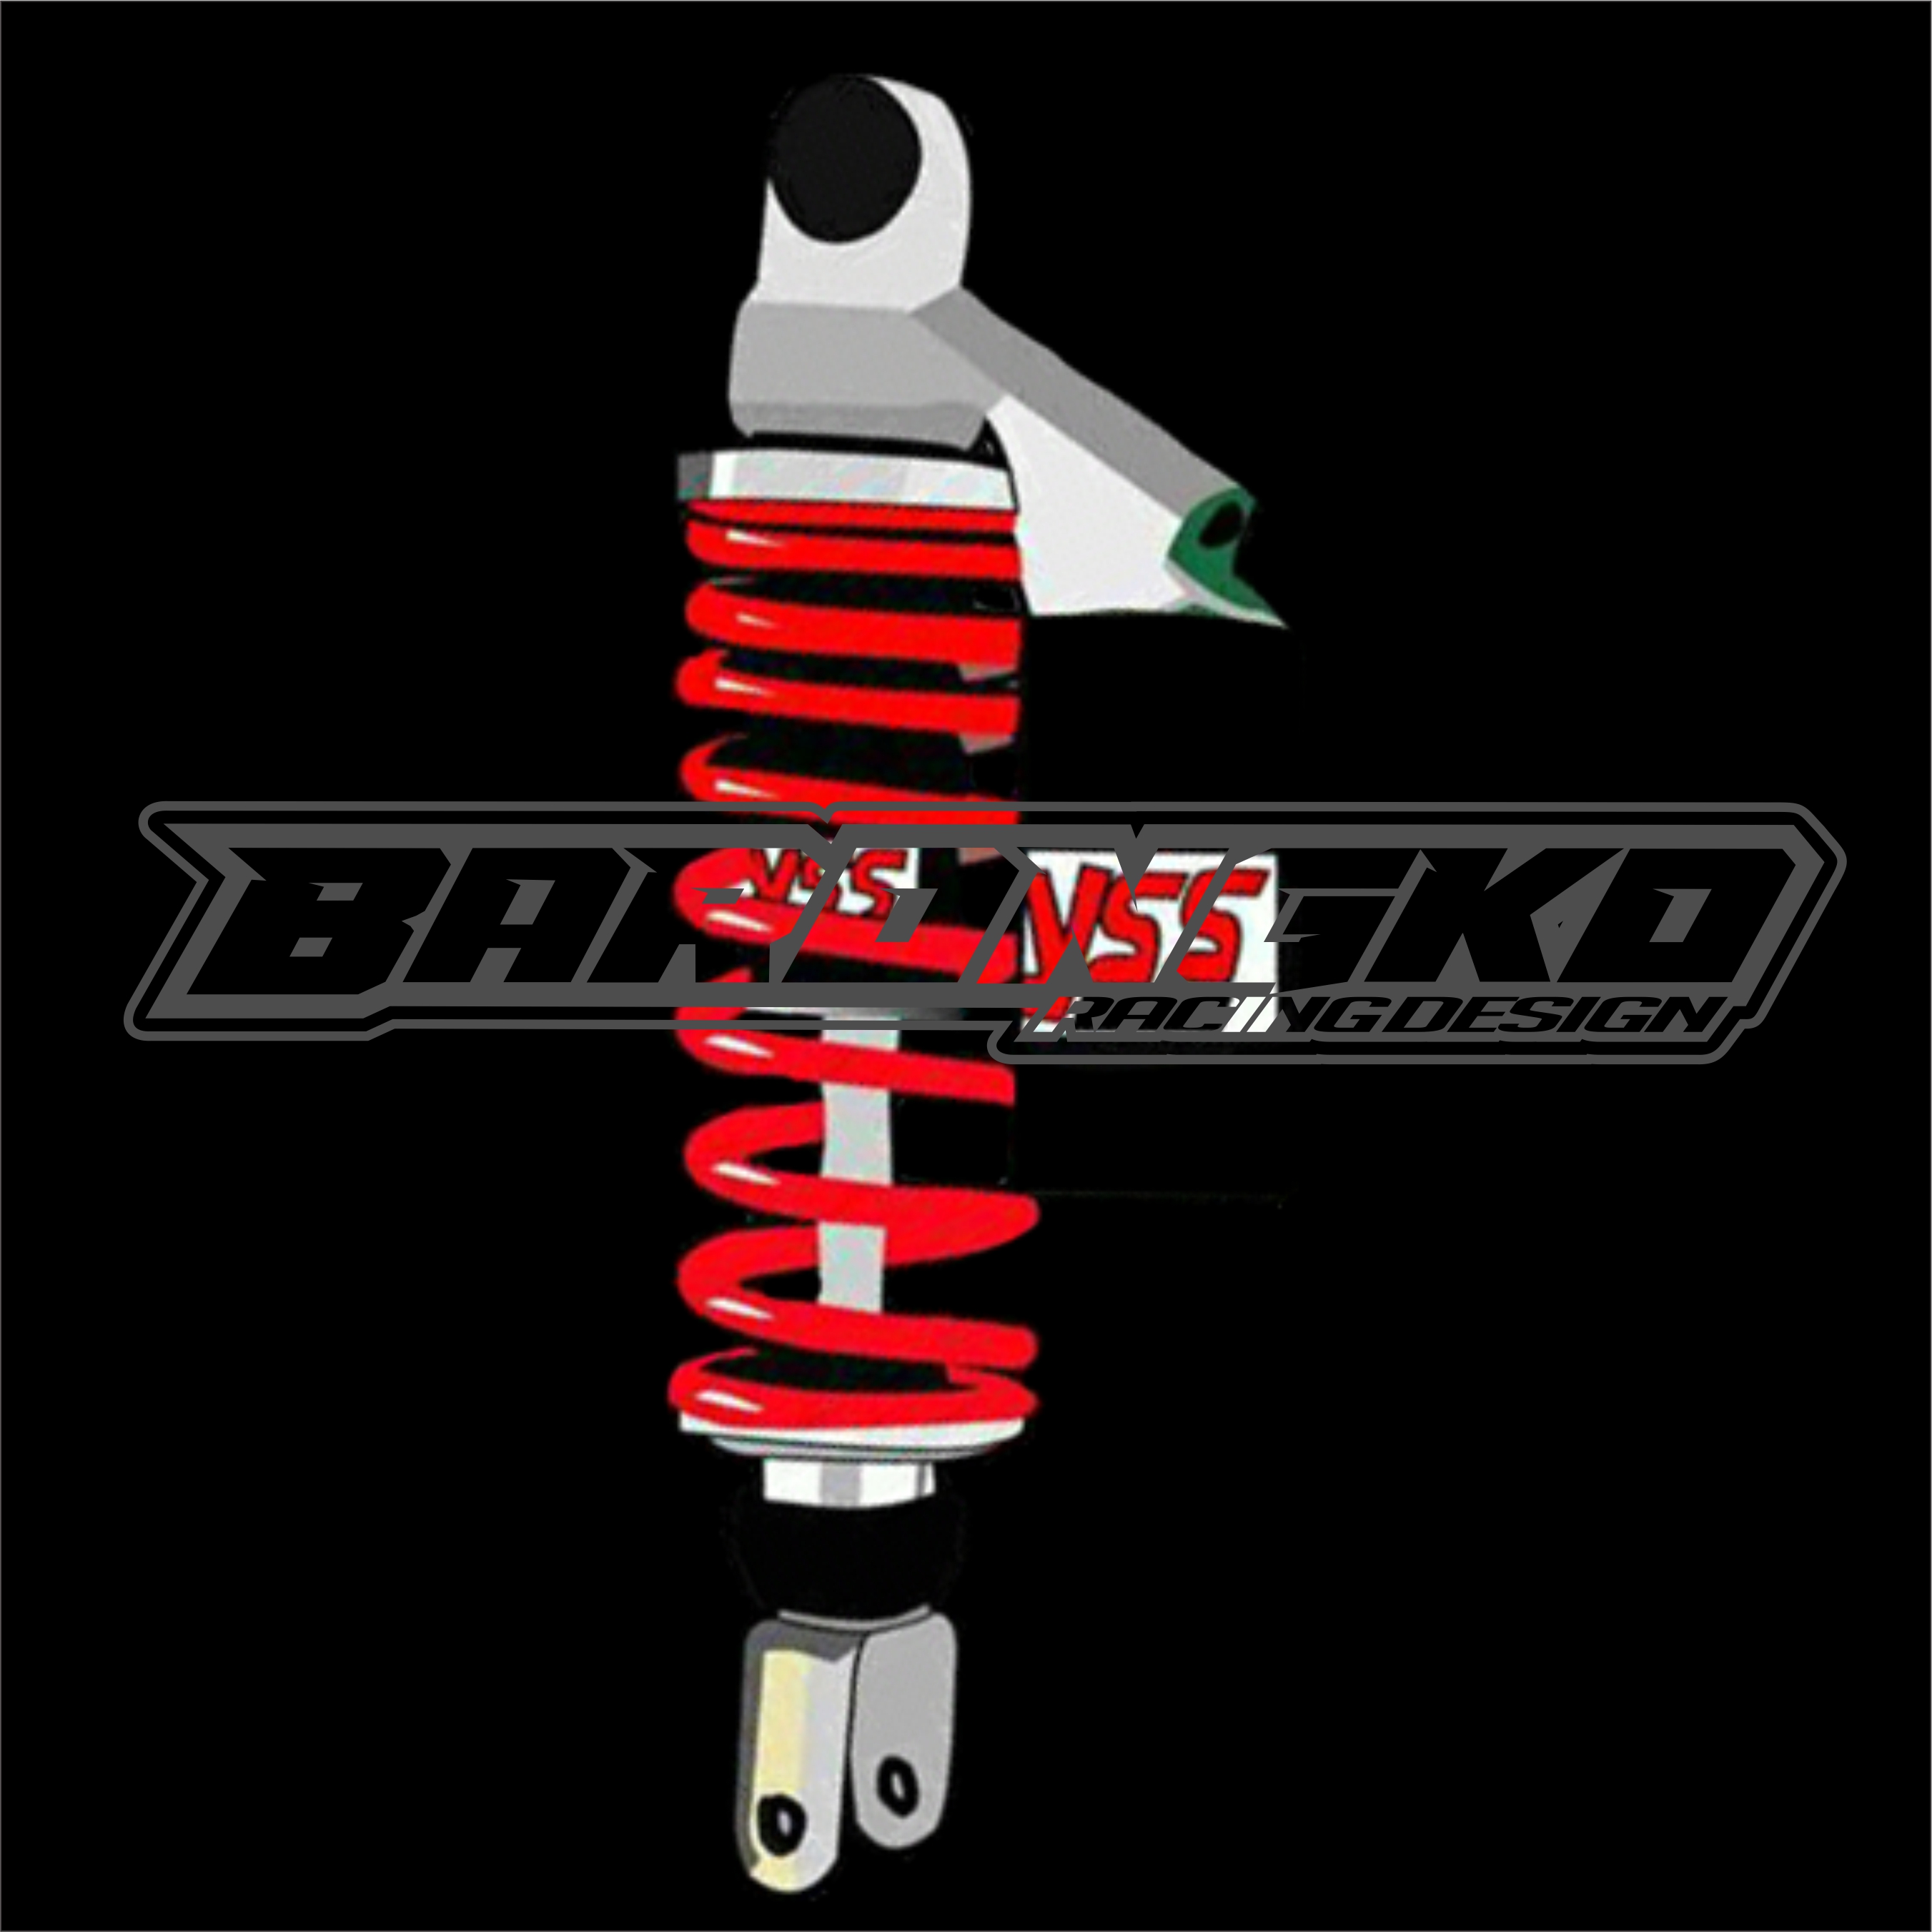 Mentahan Logo Thailook - Download pola striping file cdr dan font racing